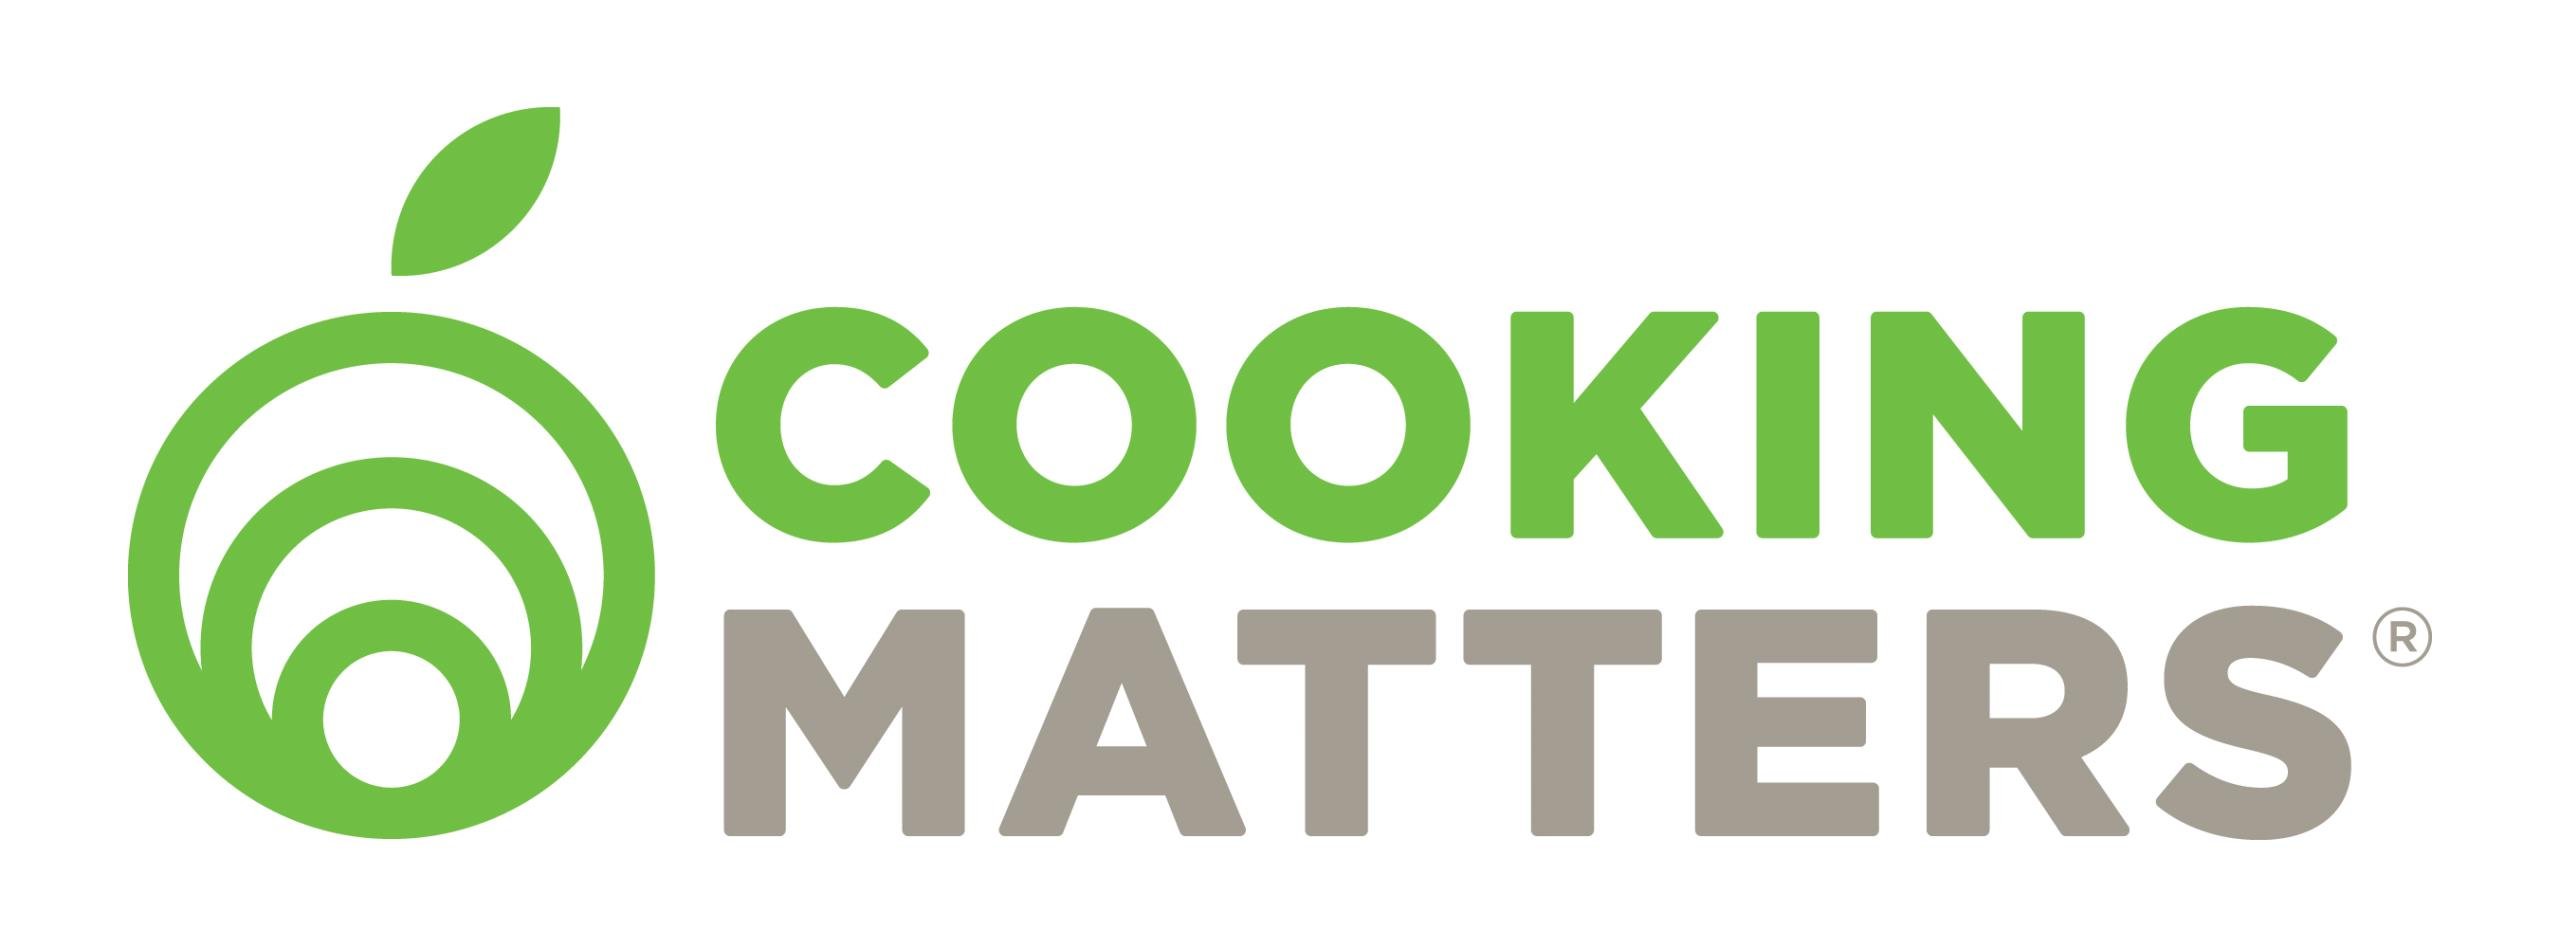 CookingMatters_2018_logo